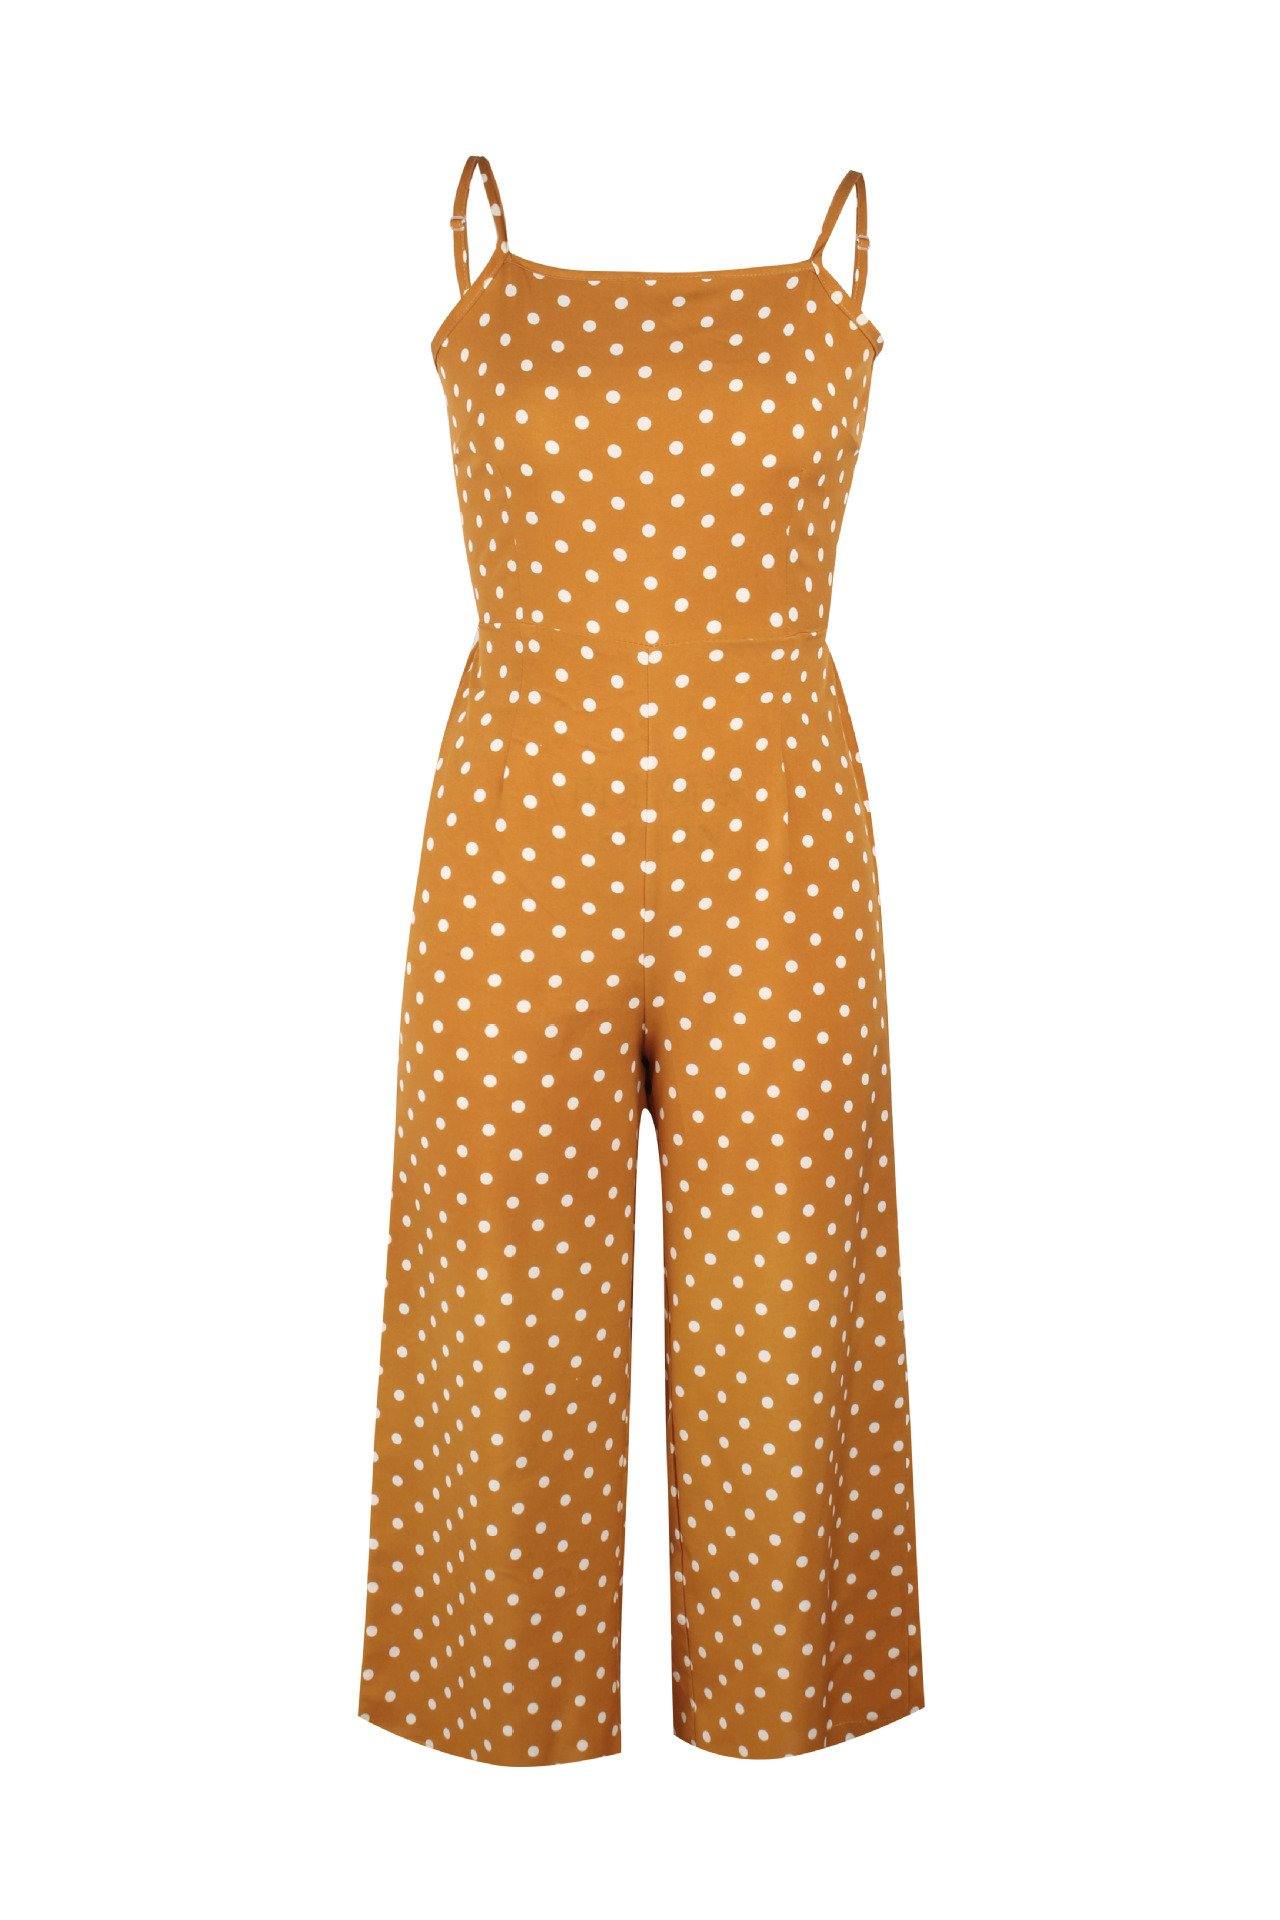 Women Dot Print Summer Jumpsuits-STYLEGOING